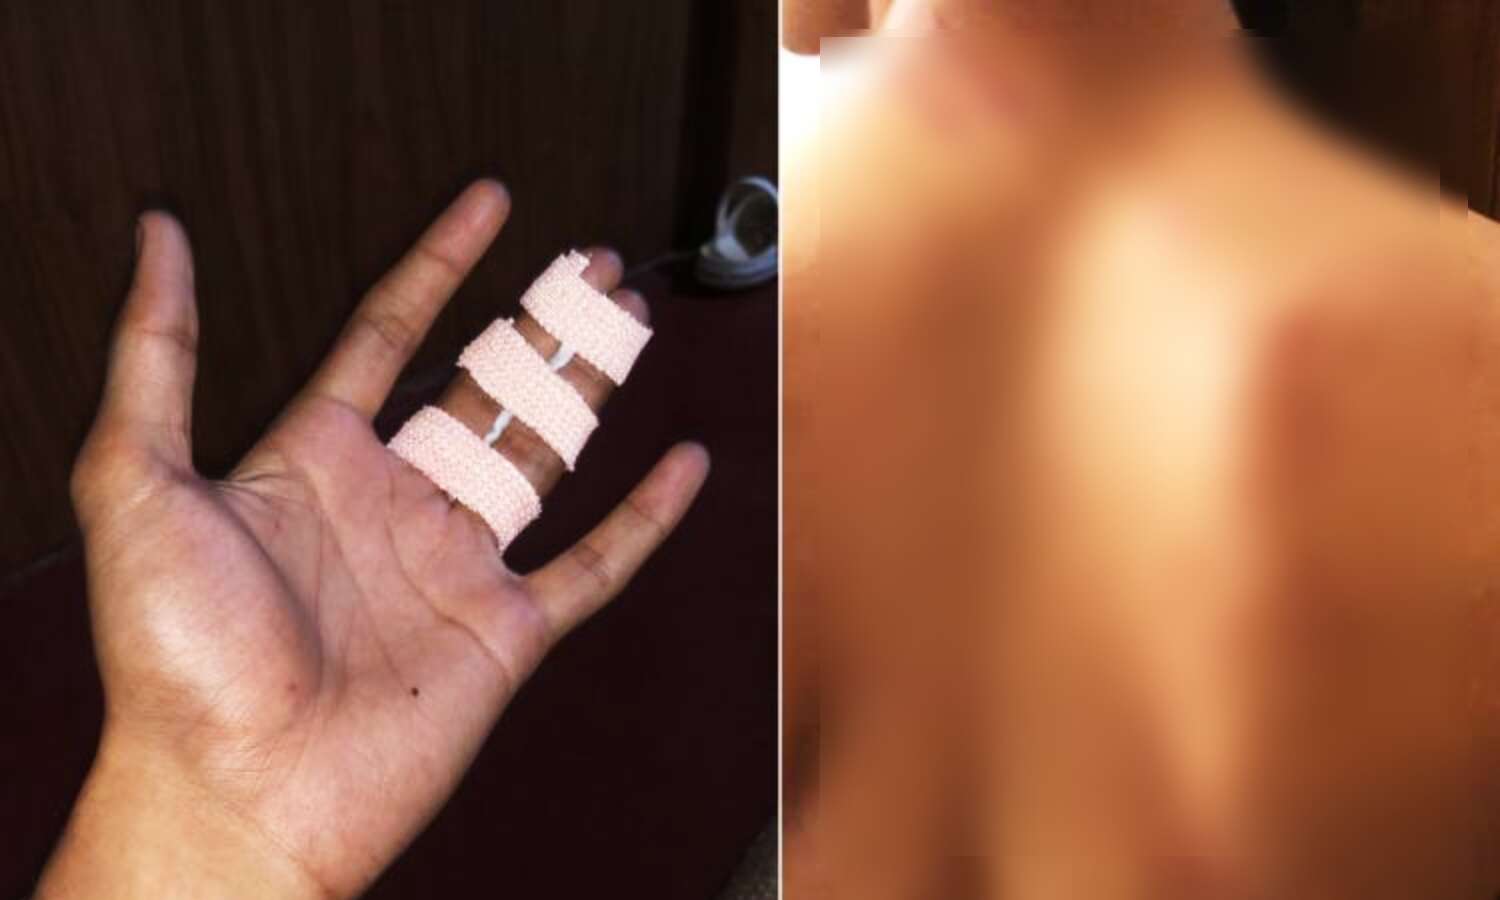 Kerala News : कॉलेज के सीनियर्स ने की छात्र से रैगिंग, विरोध करने पर बेरहमी से मारपीट, कान के पर्दे में आई गंभीर चोट